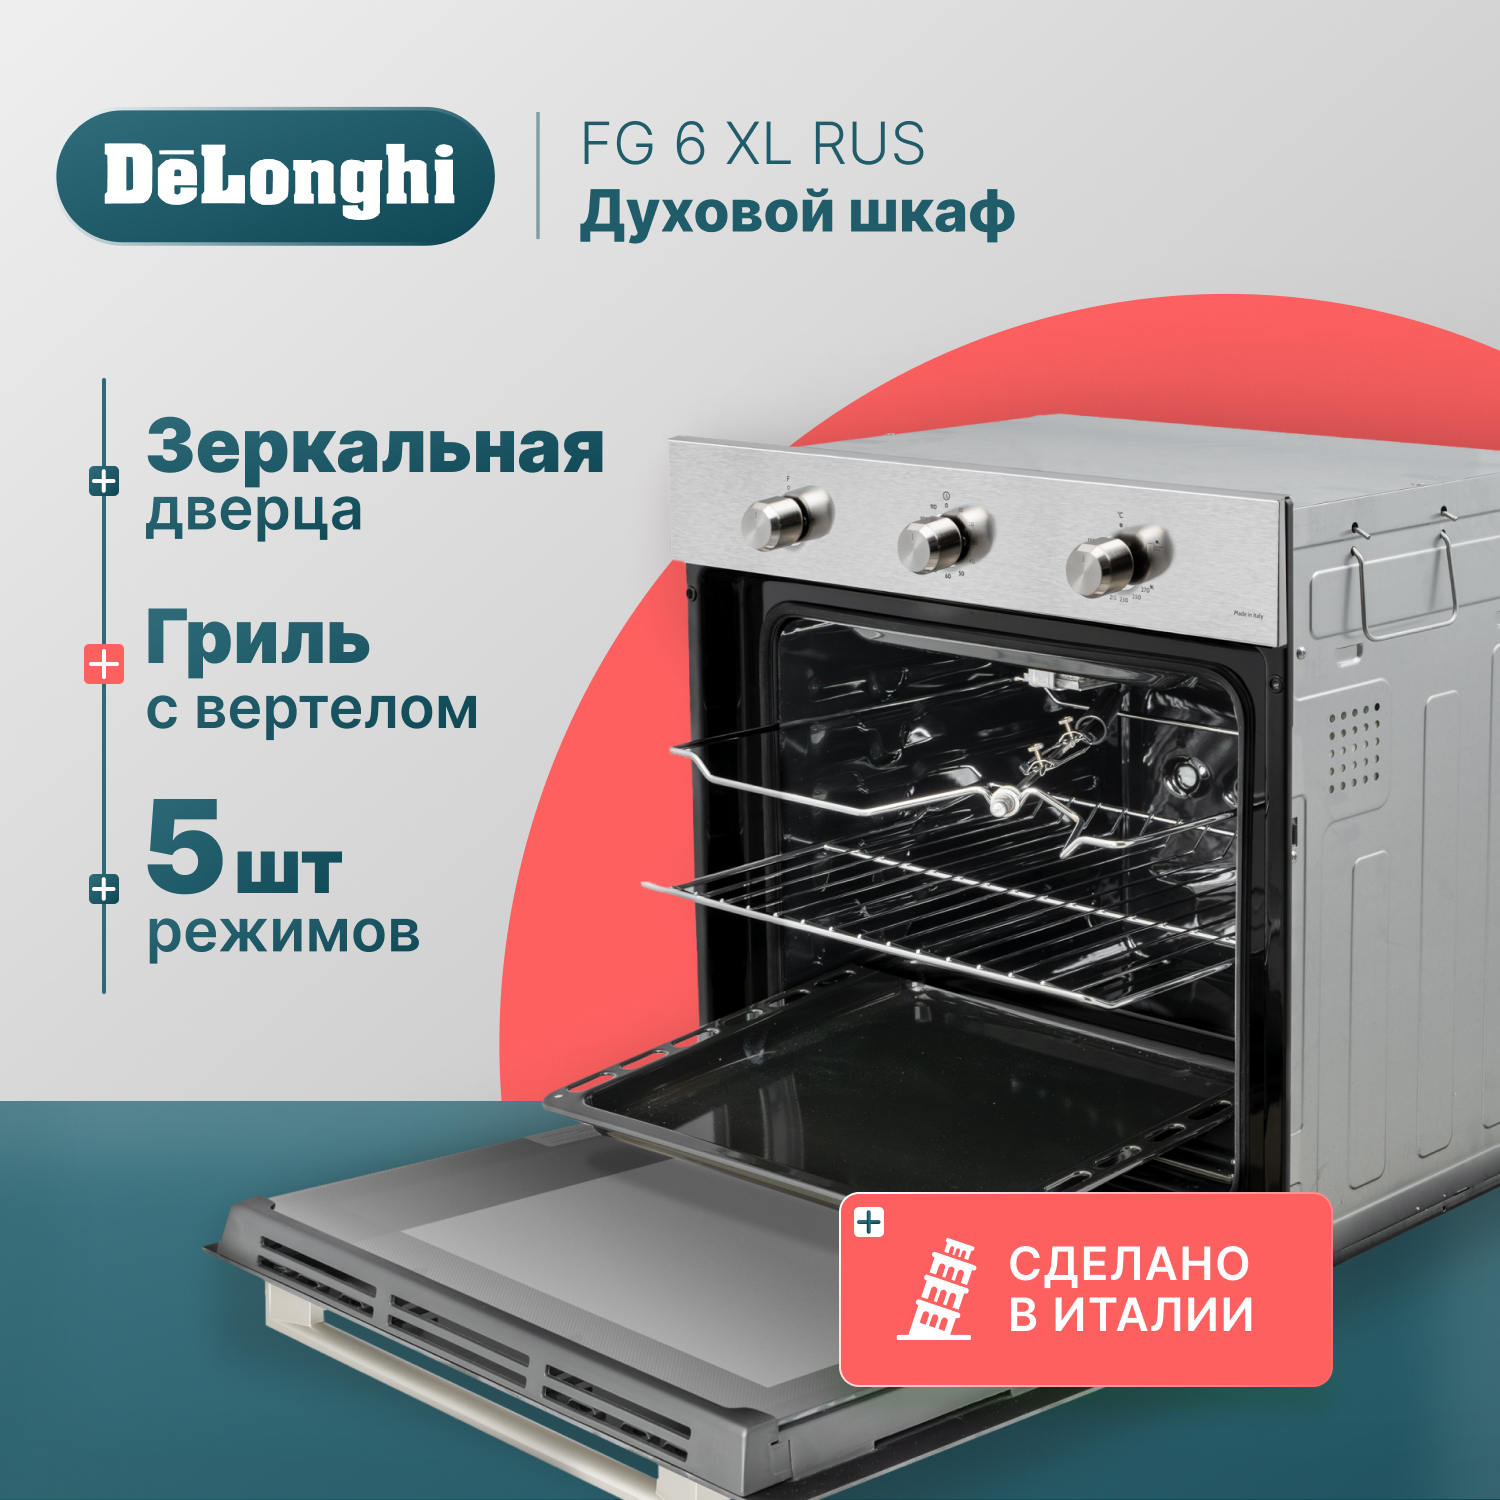 Встраиваемый газовый духовой шкаф Delonghi FG 6 XL RUS серебристый электрический духовой шкаф hotpoint fe8 831 jsh 59 4x59 5x56 7 см конвекция нержавеющая сталь